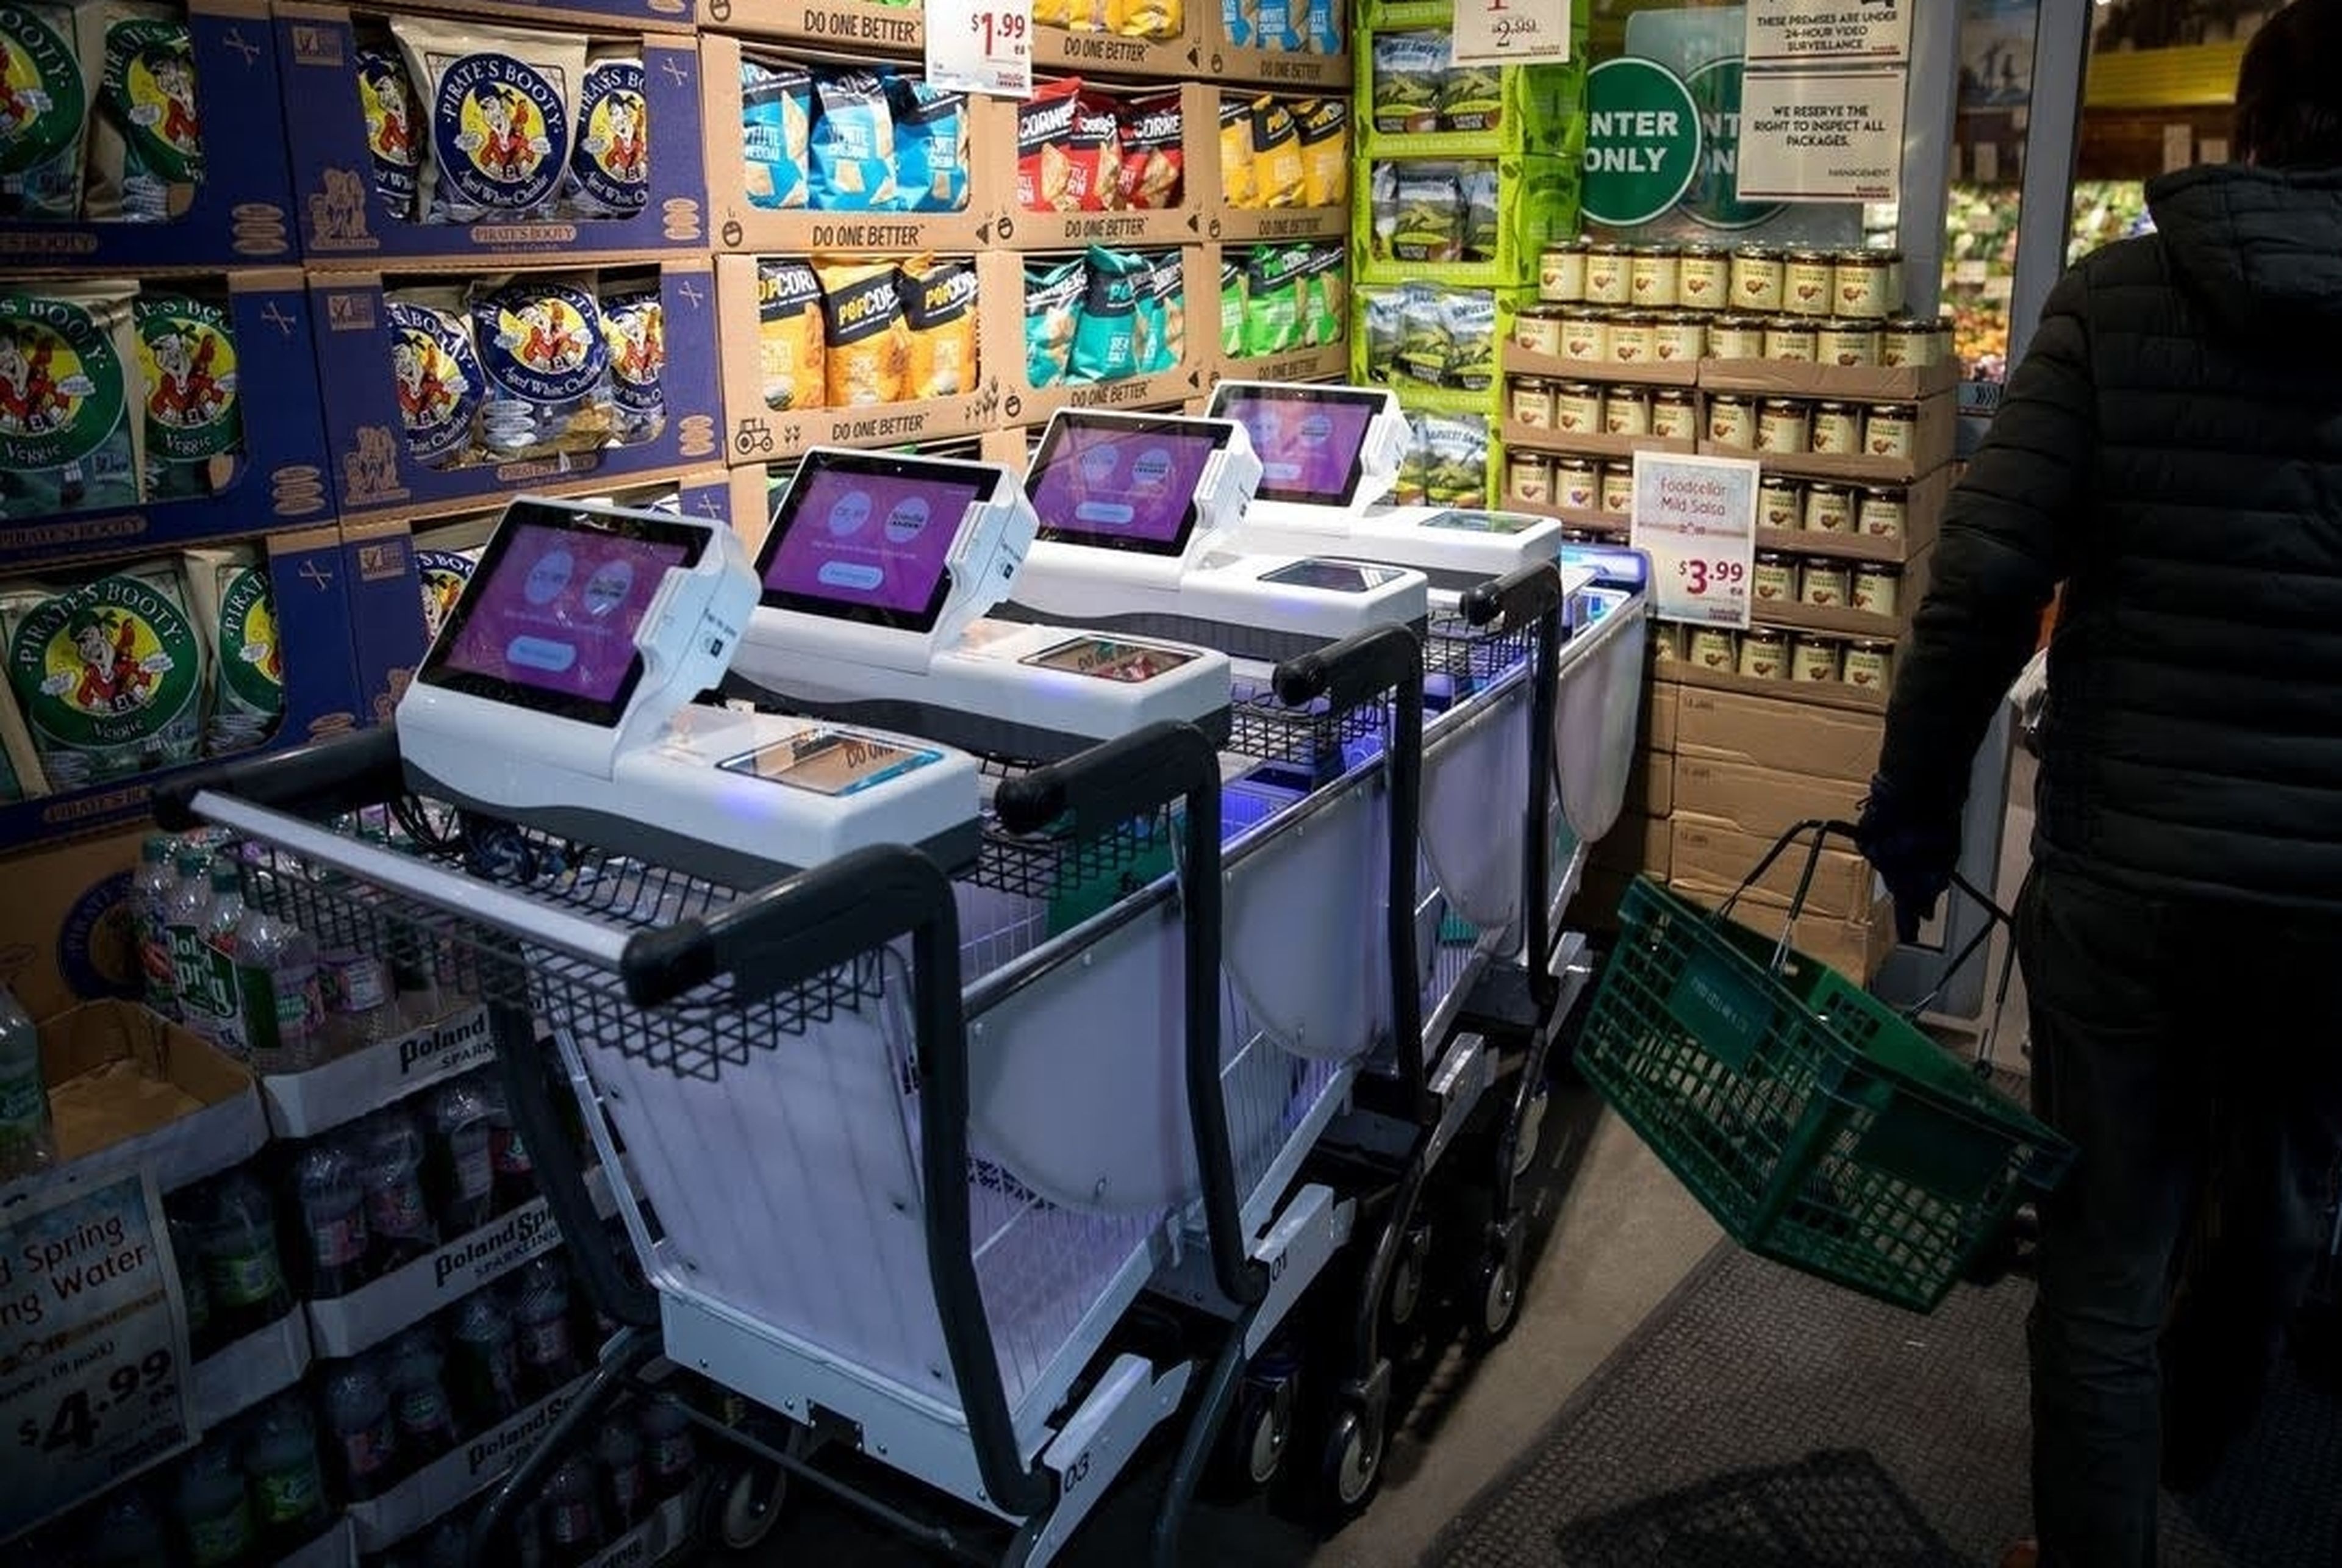 El carro de supermercado con IA que pesa la fruta, te lleva a las ofertas, y te cobra al salir